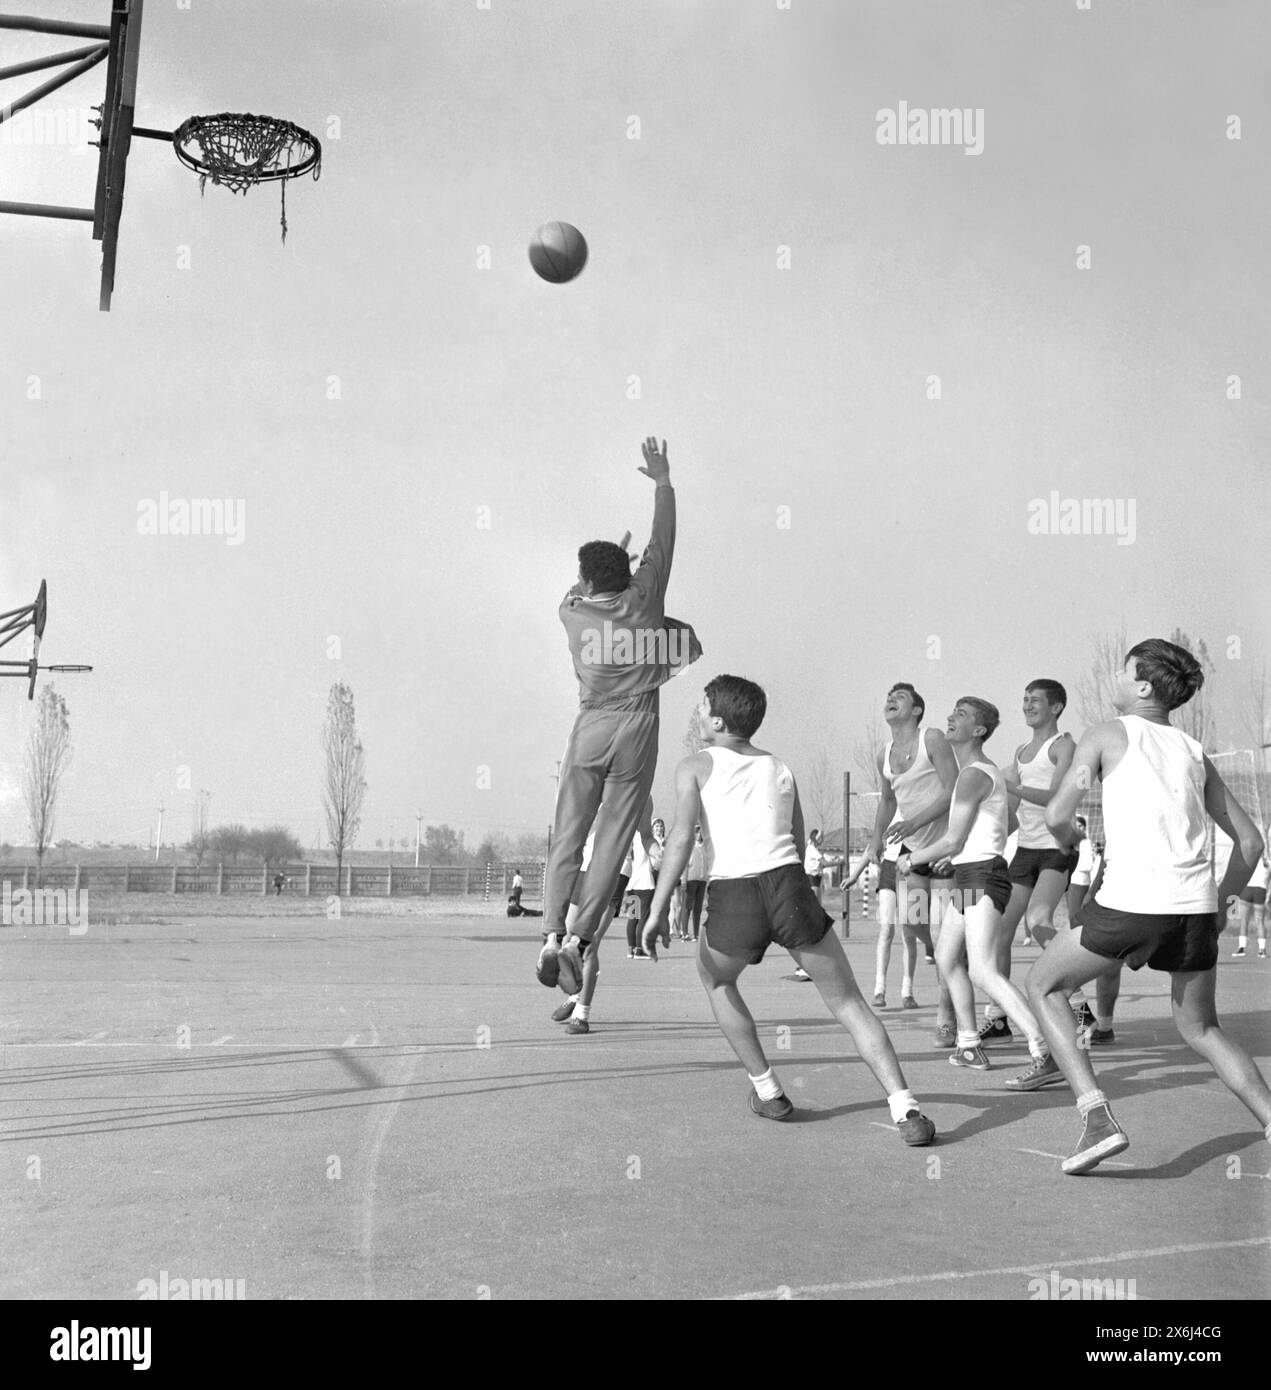 République socialiste de Roumanie dans les années 1970 Jeunes élèves jouant au basket-ball pendant le cours d'éducation physique. Banque D'Images